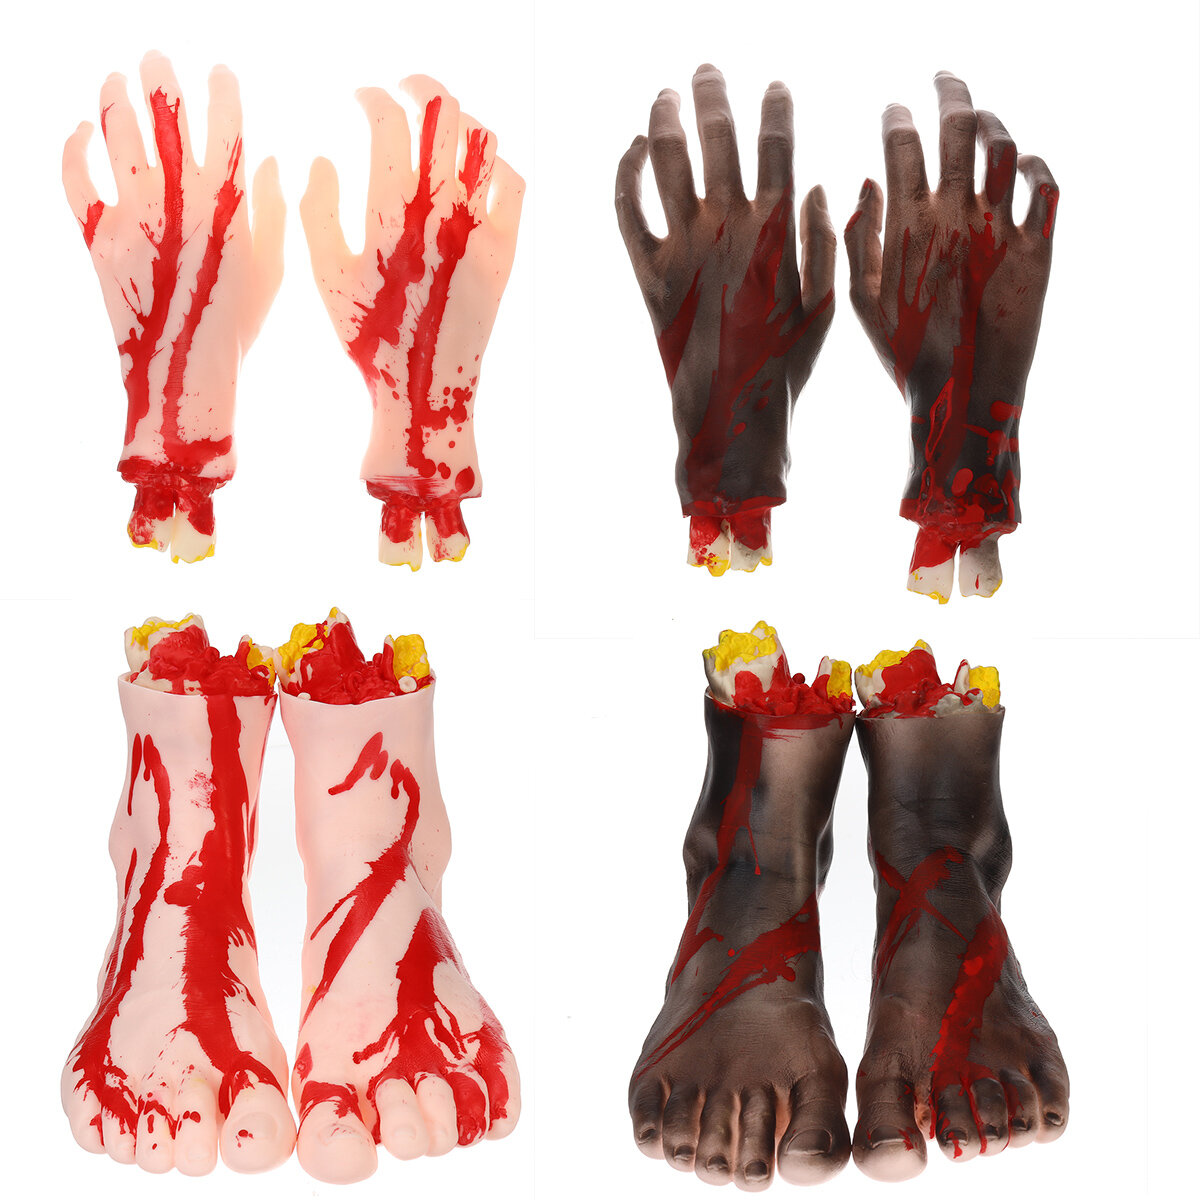 1 Pair of Hands/Feet Vinyl Halloween Horror Broken Hands Realistic Scene Decoration Props Tricky Toy